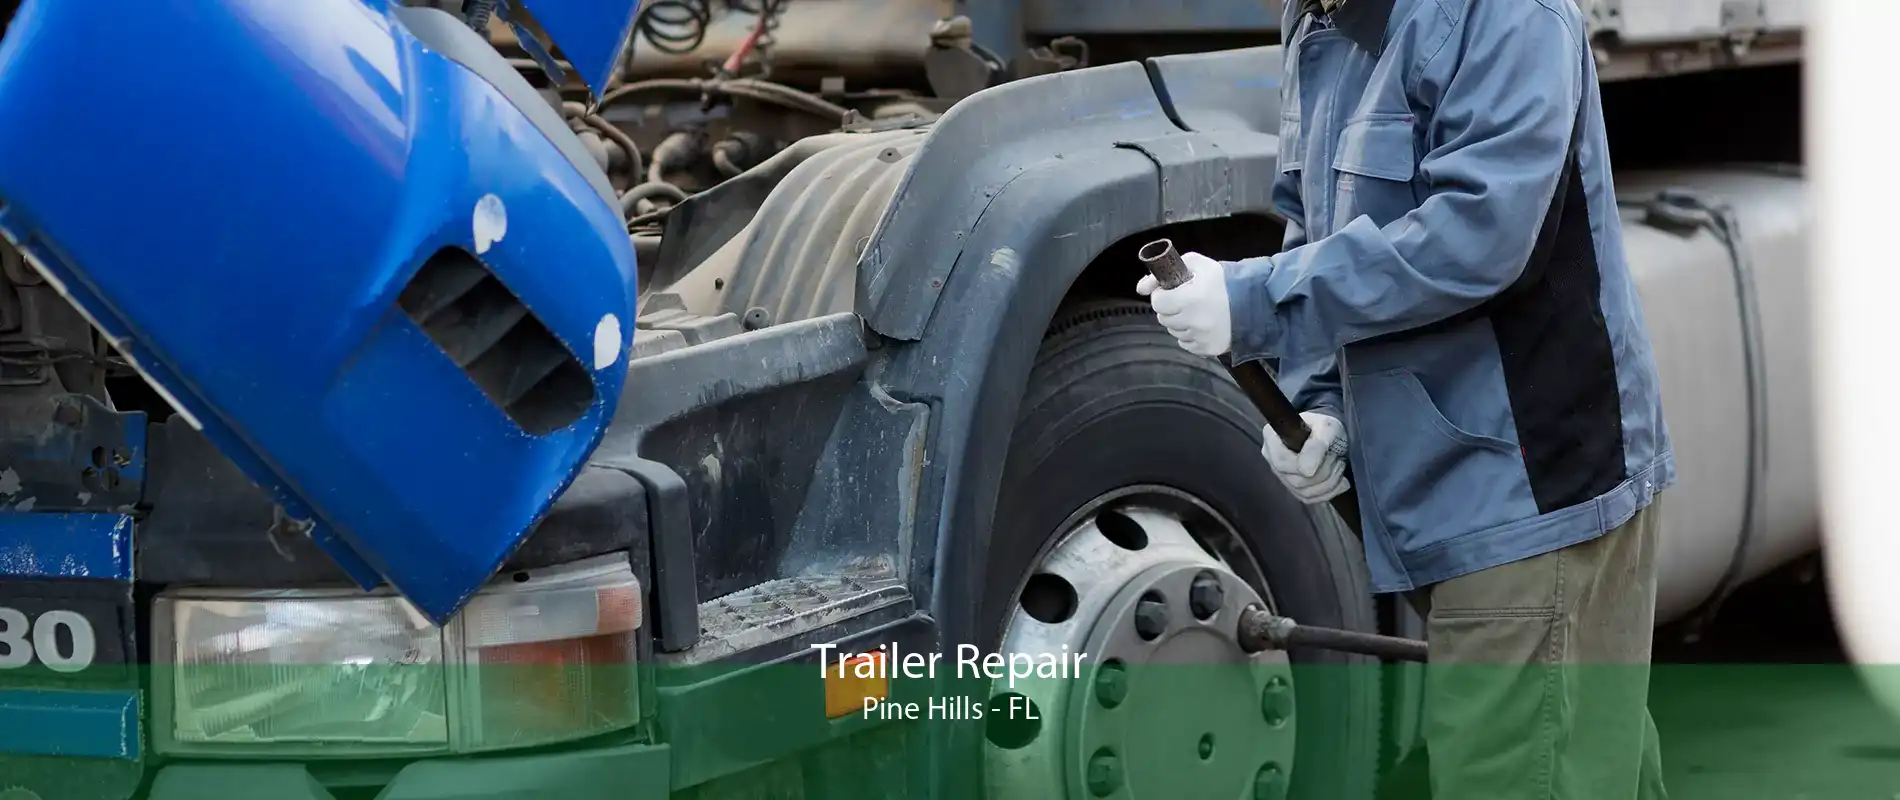 Trailer Repair Pine Hills - FL